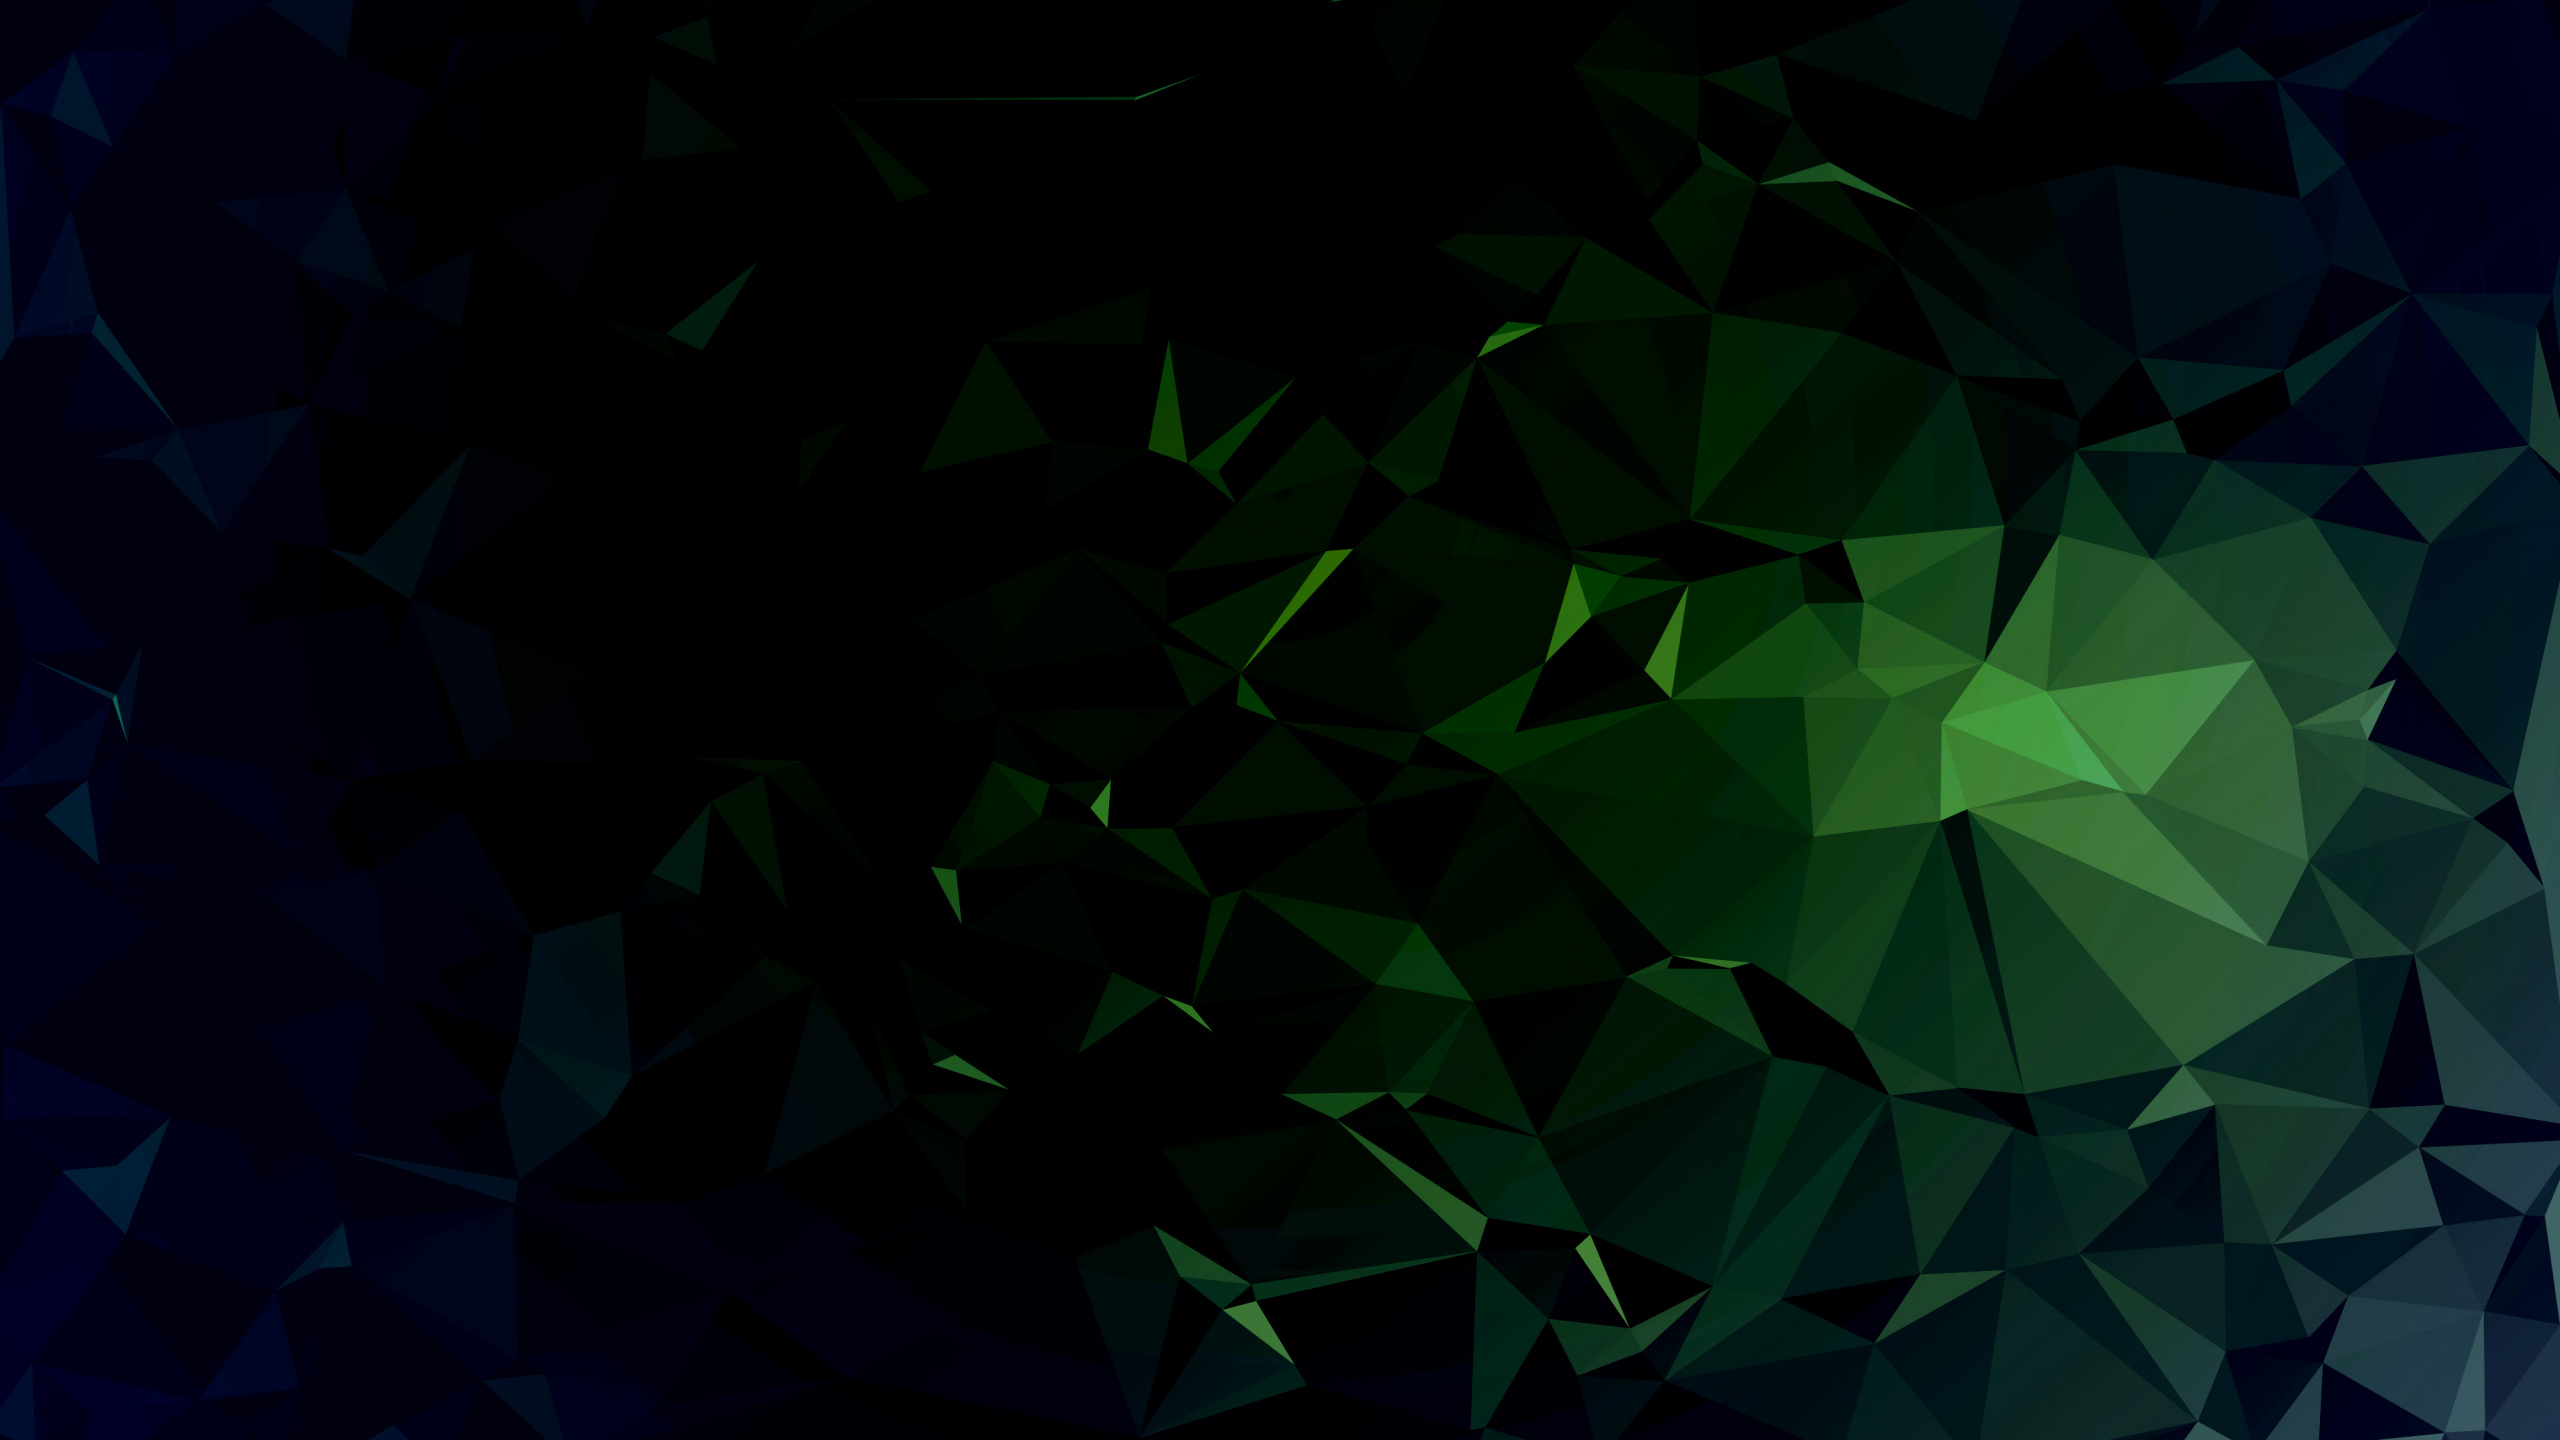 绿色的, 黑色的, 光, 对称, 创造性的艺术 壁纸 2560x1440 允许